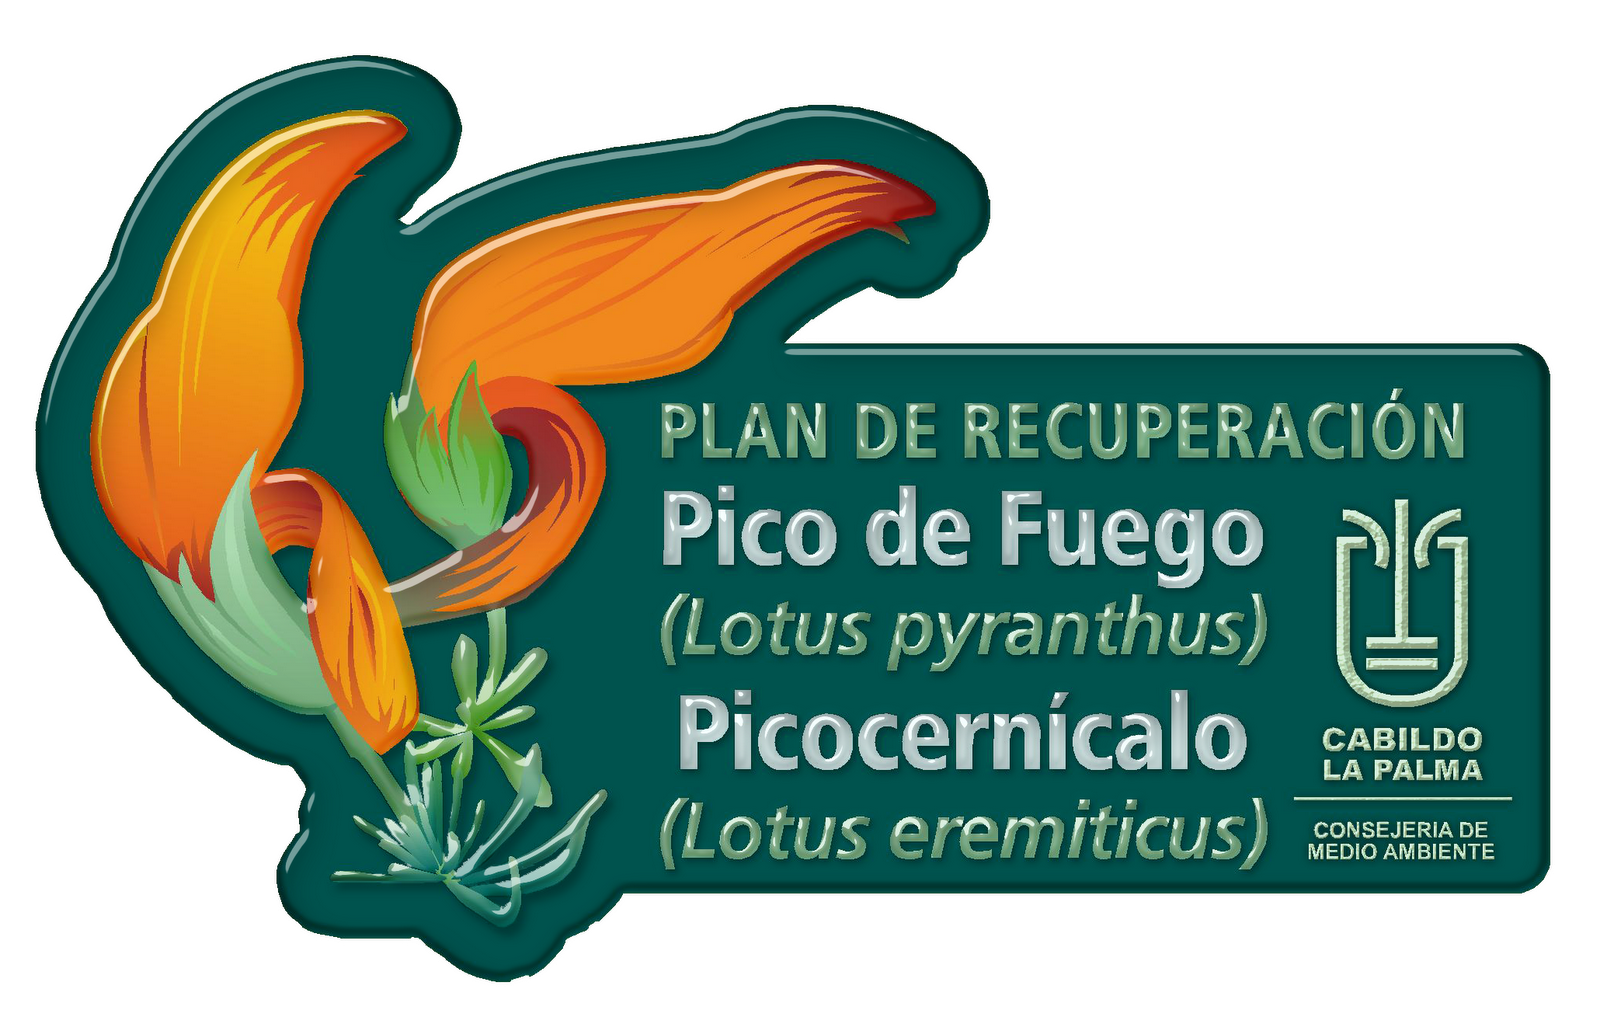 Conservación Lotus La Palma